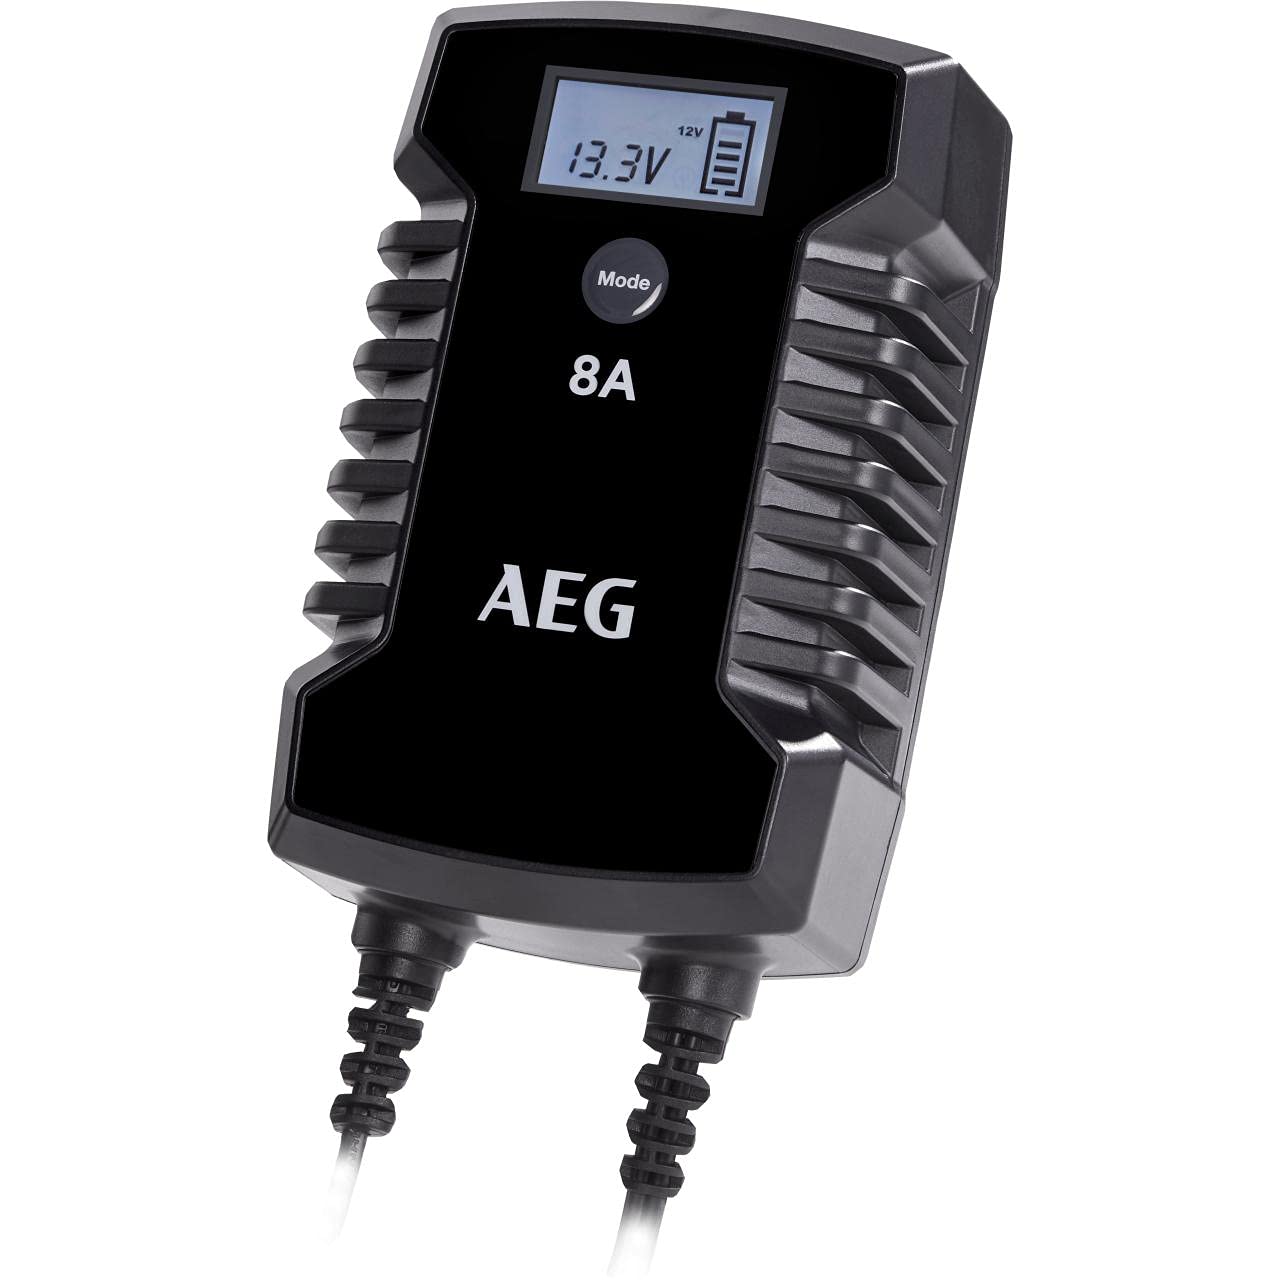 AEG Automotive 10618 Mikroprozessor-Ladegerät für Auto Batterie LD 8.0, 8 Ampere für 12/24 V, 7-HF Ladestufen, Autostartfunktion, Komfortanschluss von AEG